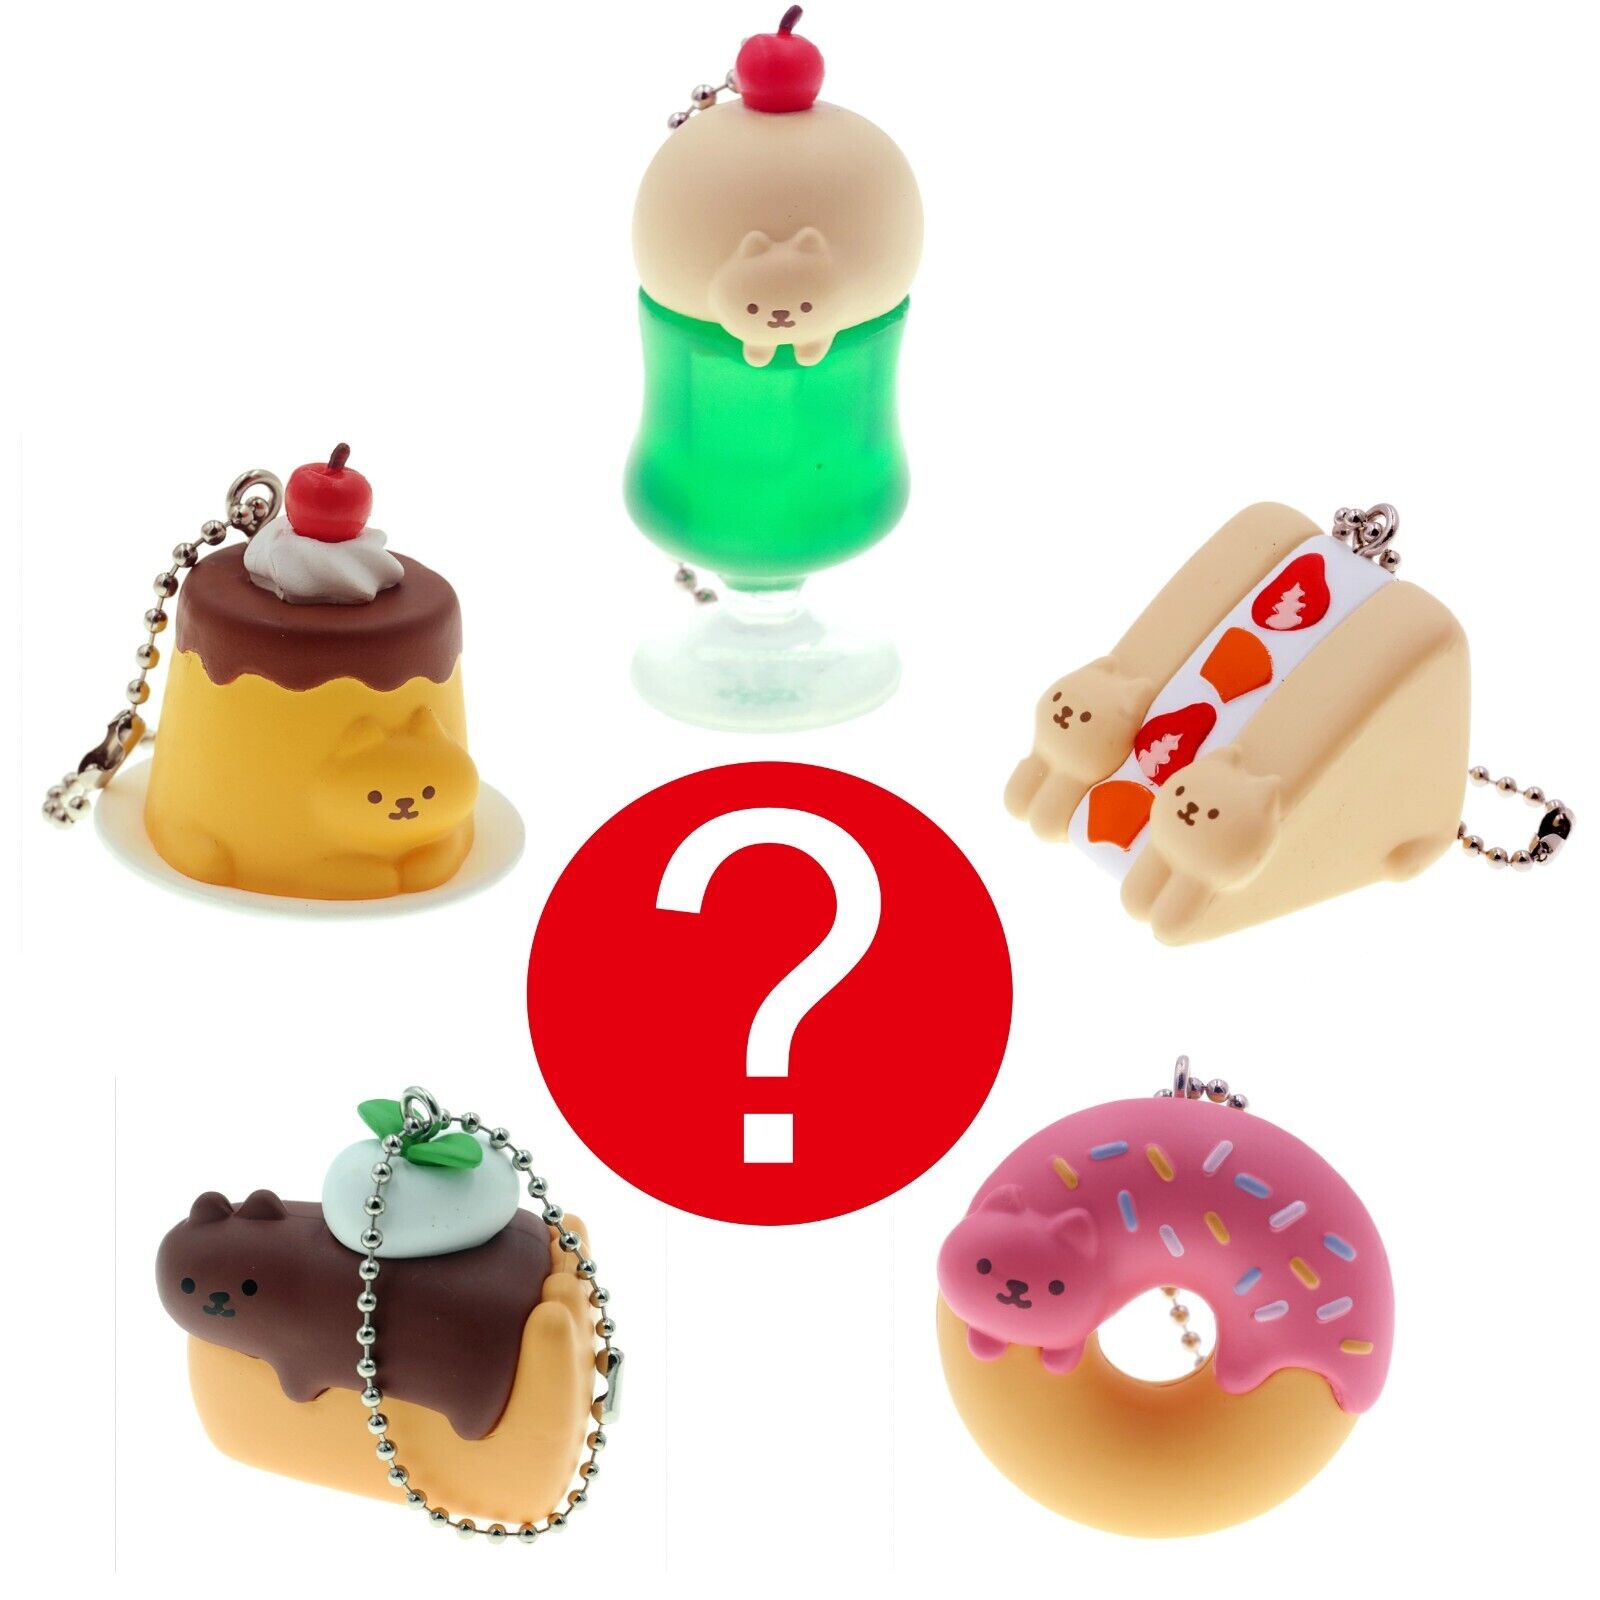 Japanese Blind Box Cat Donut Pie Pudding Charm 1 Random Fake Food Keychain